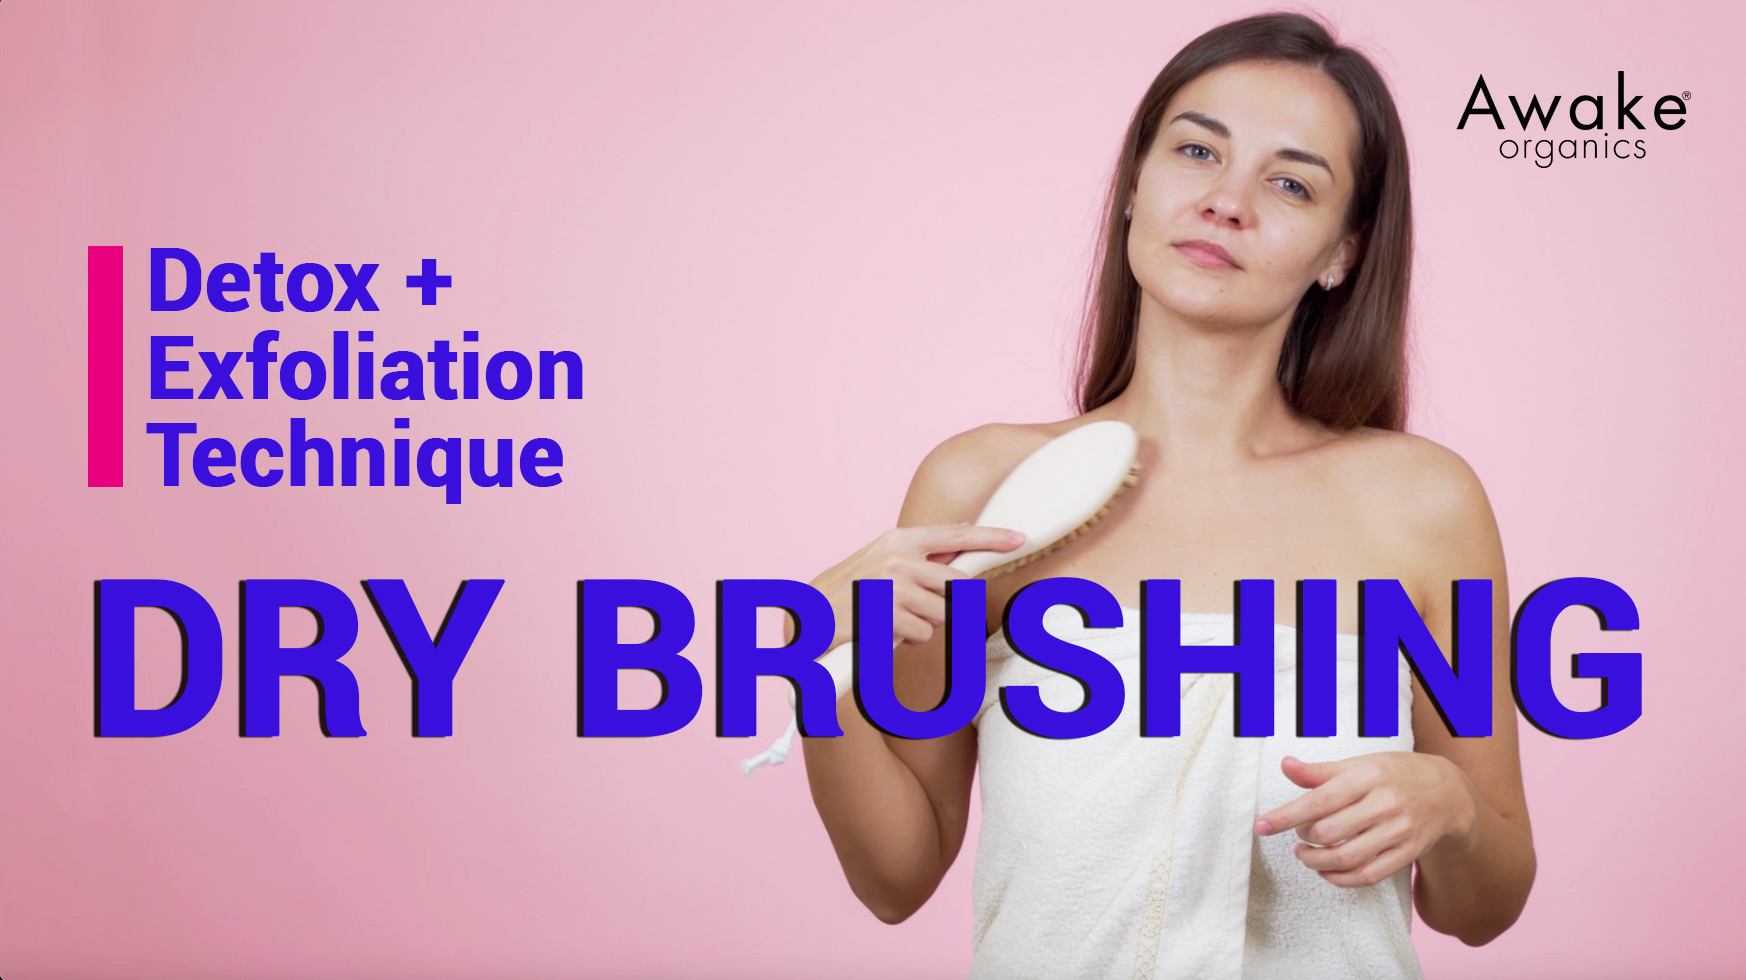 Dry Brushing Skin And Health Benefits Awake Organics Uk